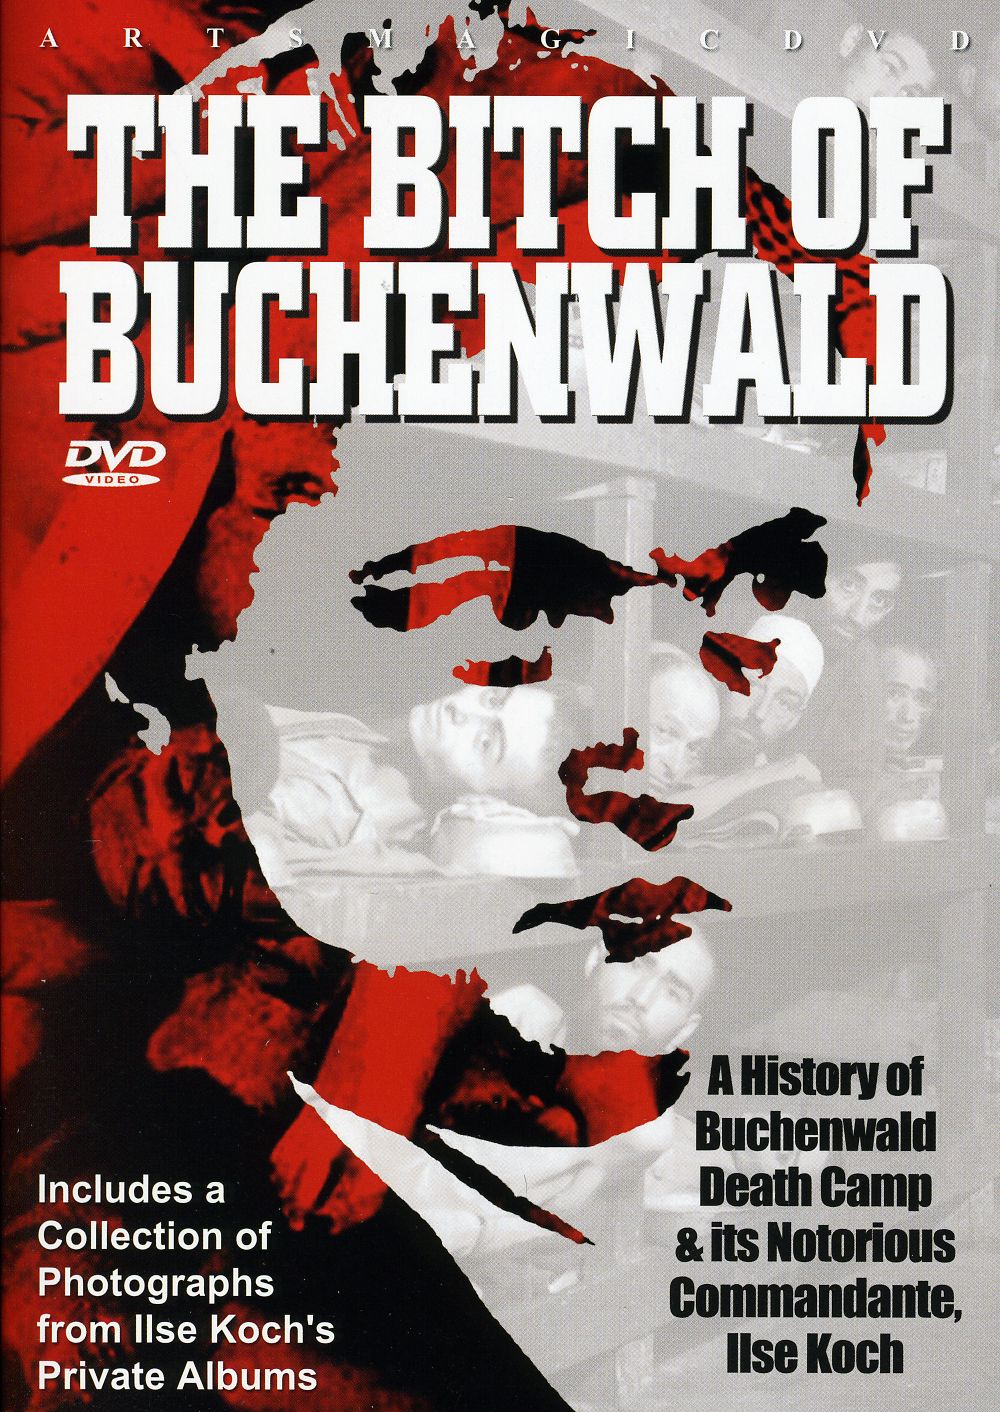 BITCH OF BUCHENWALD